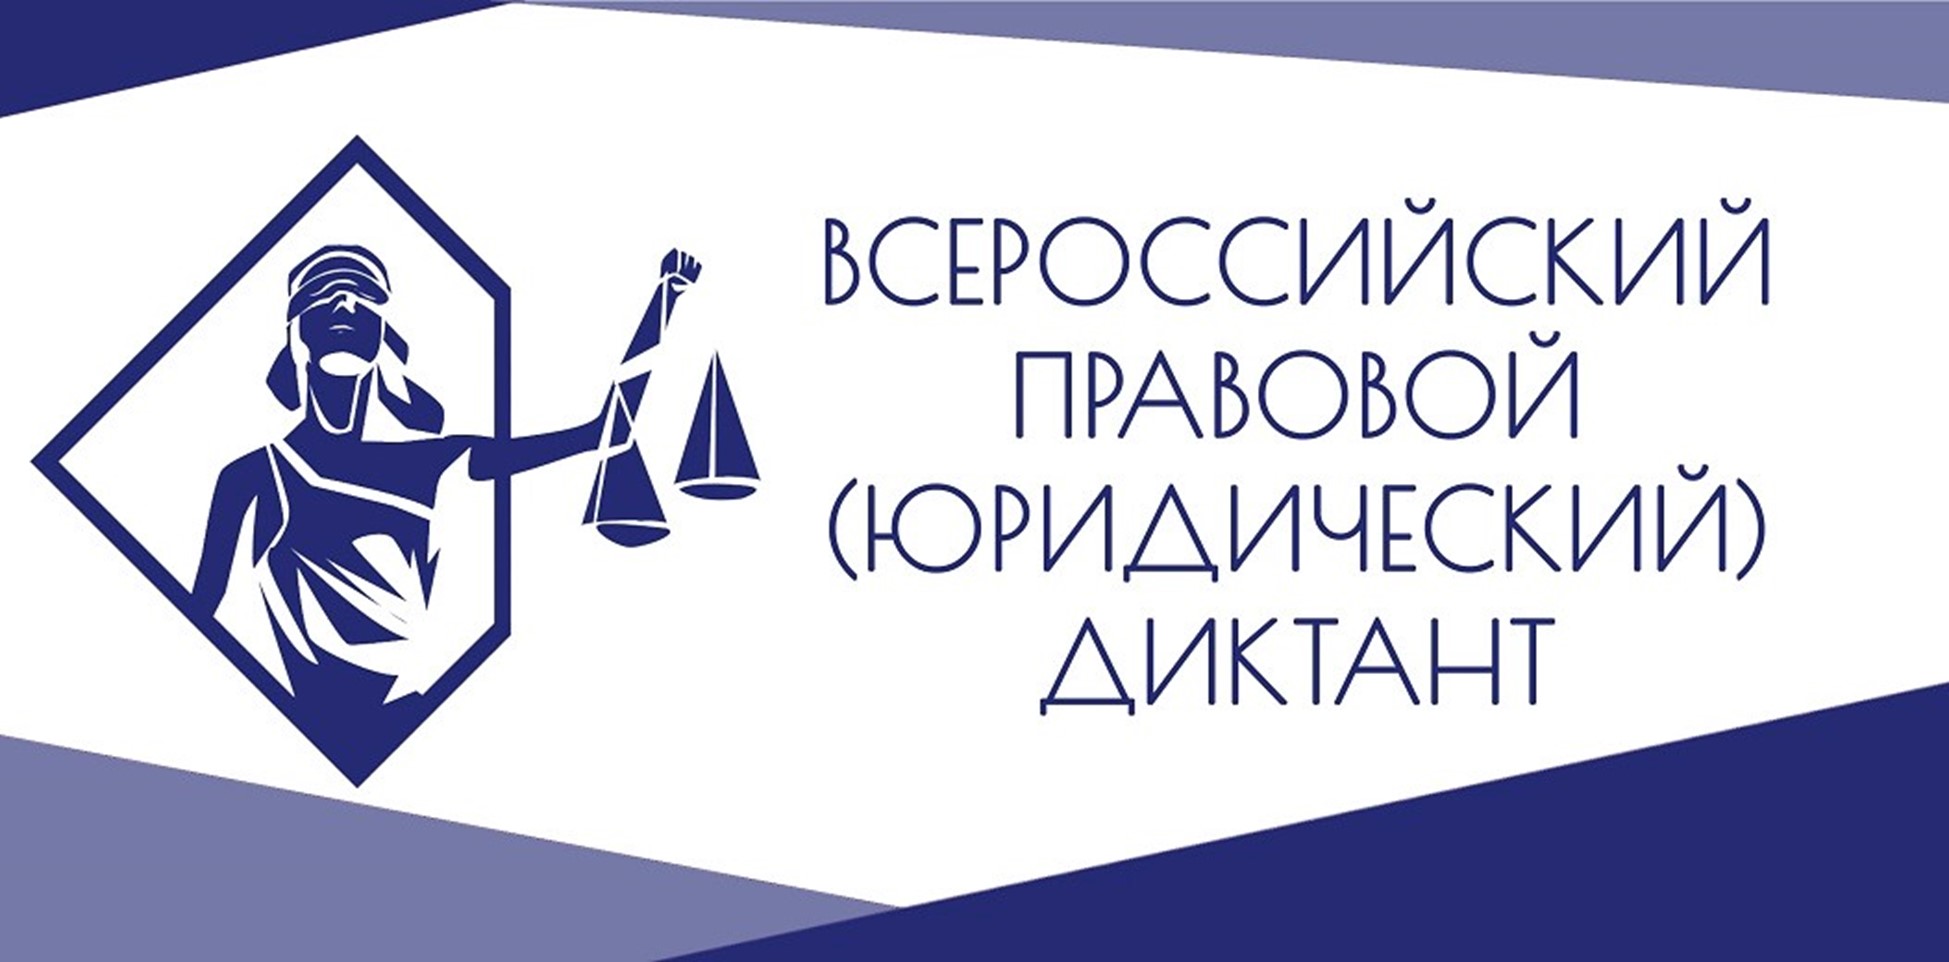 VII Всероссийский правовой (юридического) диктант.